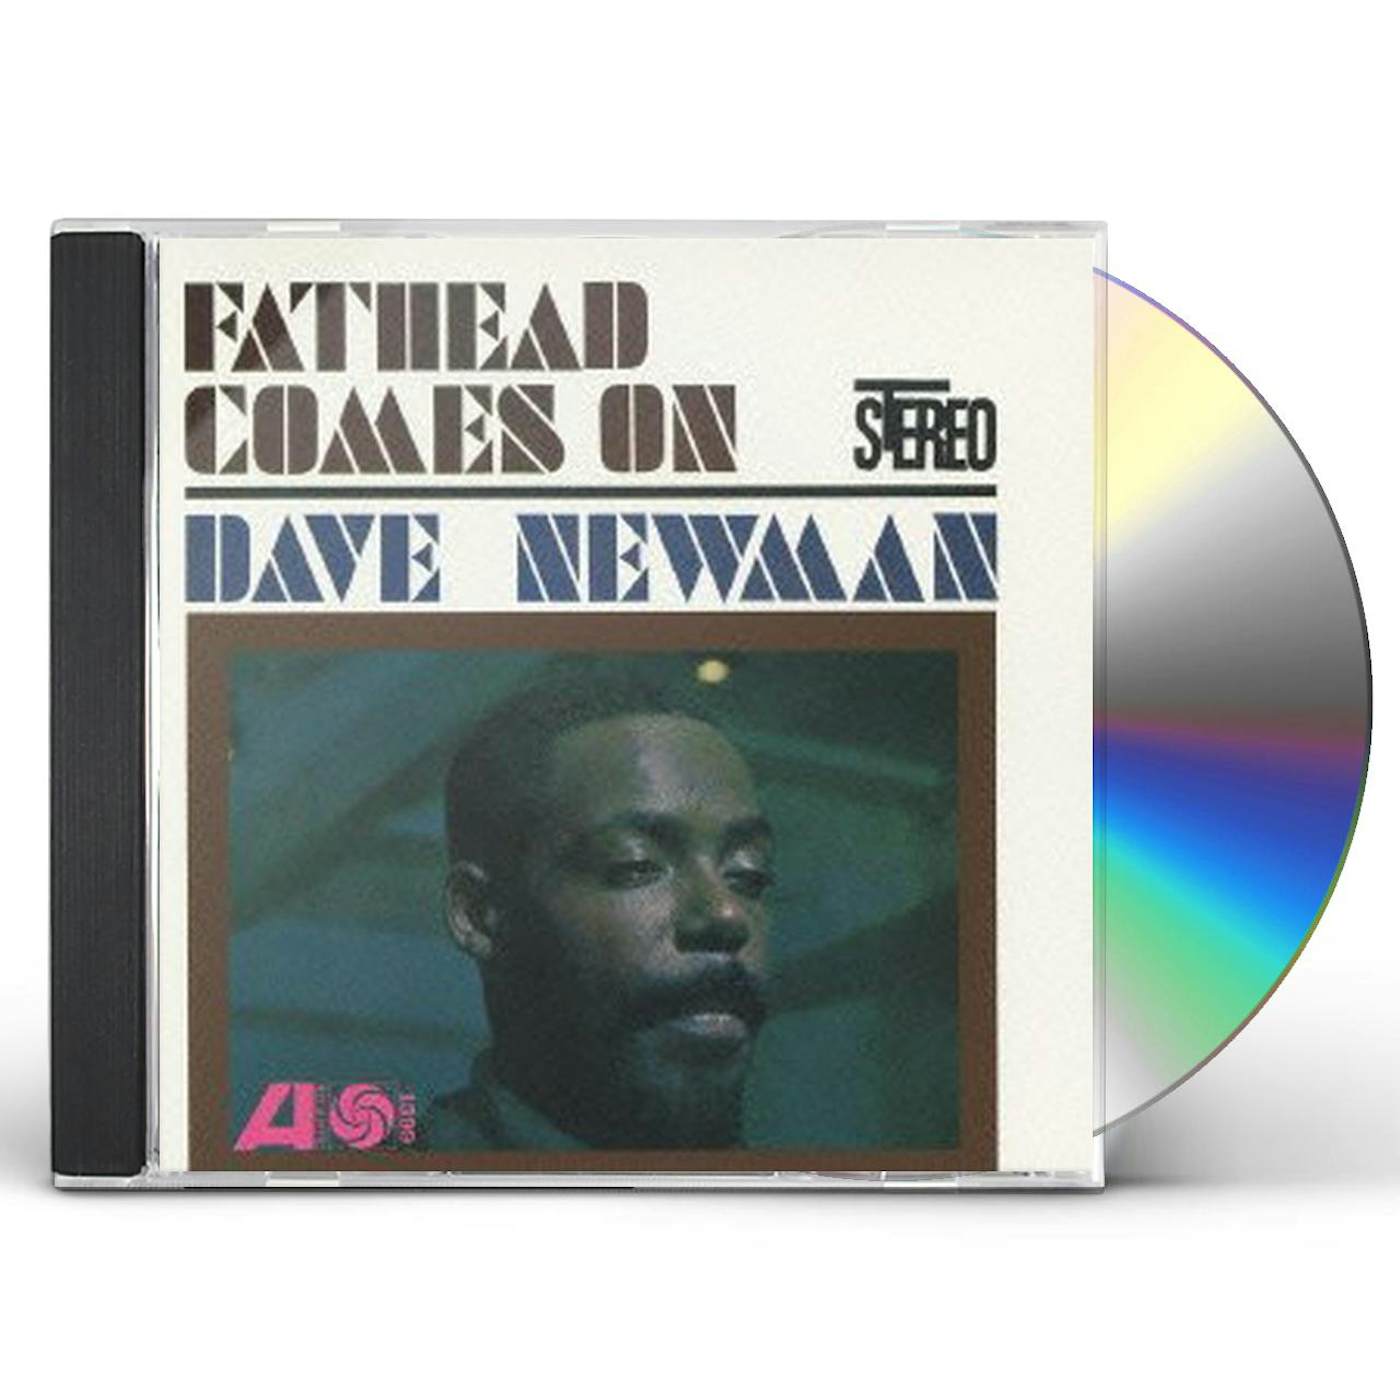 David Newman FATHEAD COMES ON CD